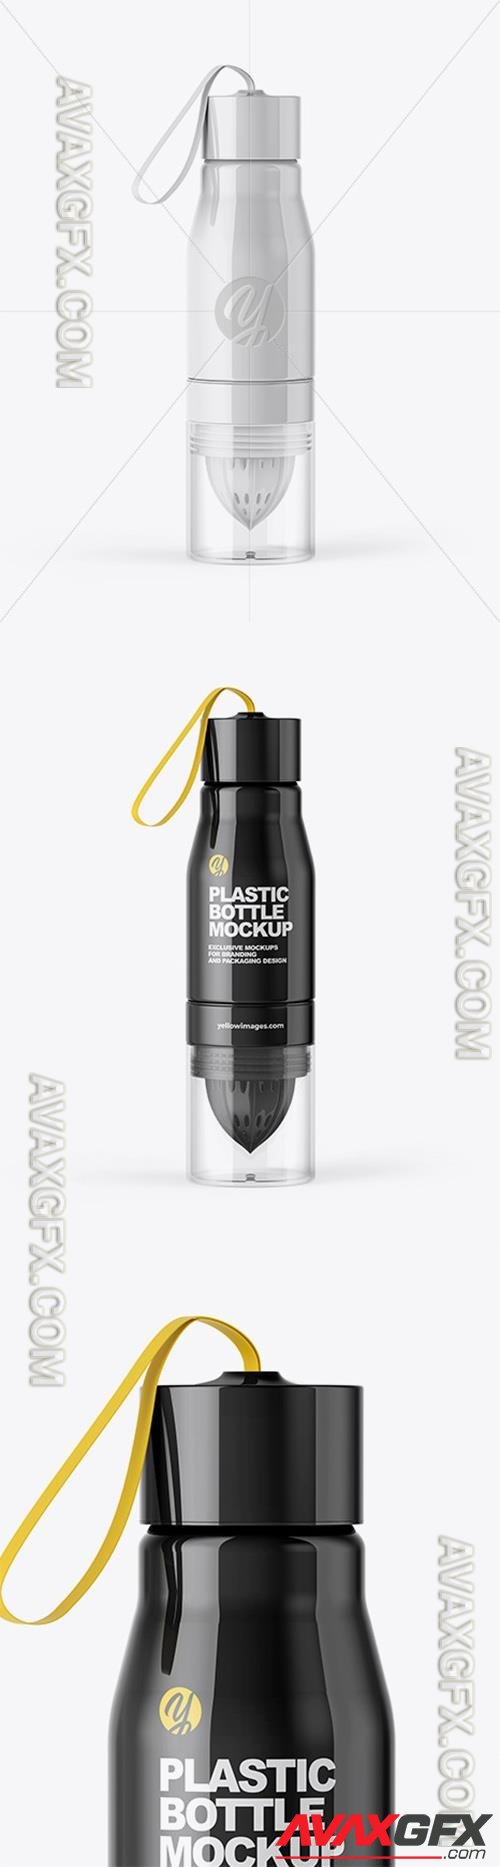 Glossy Water Bottle Mockup 51571  TIF